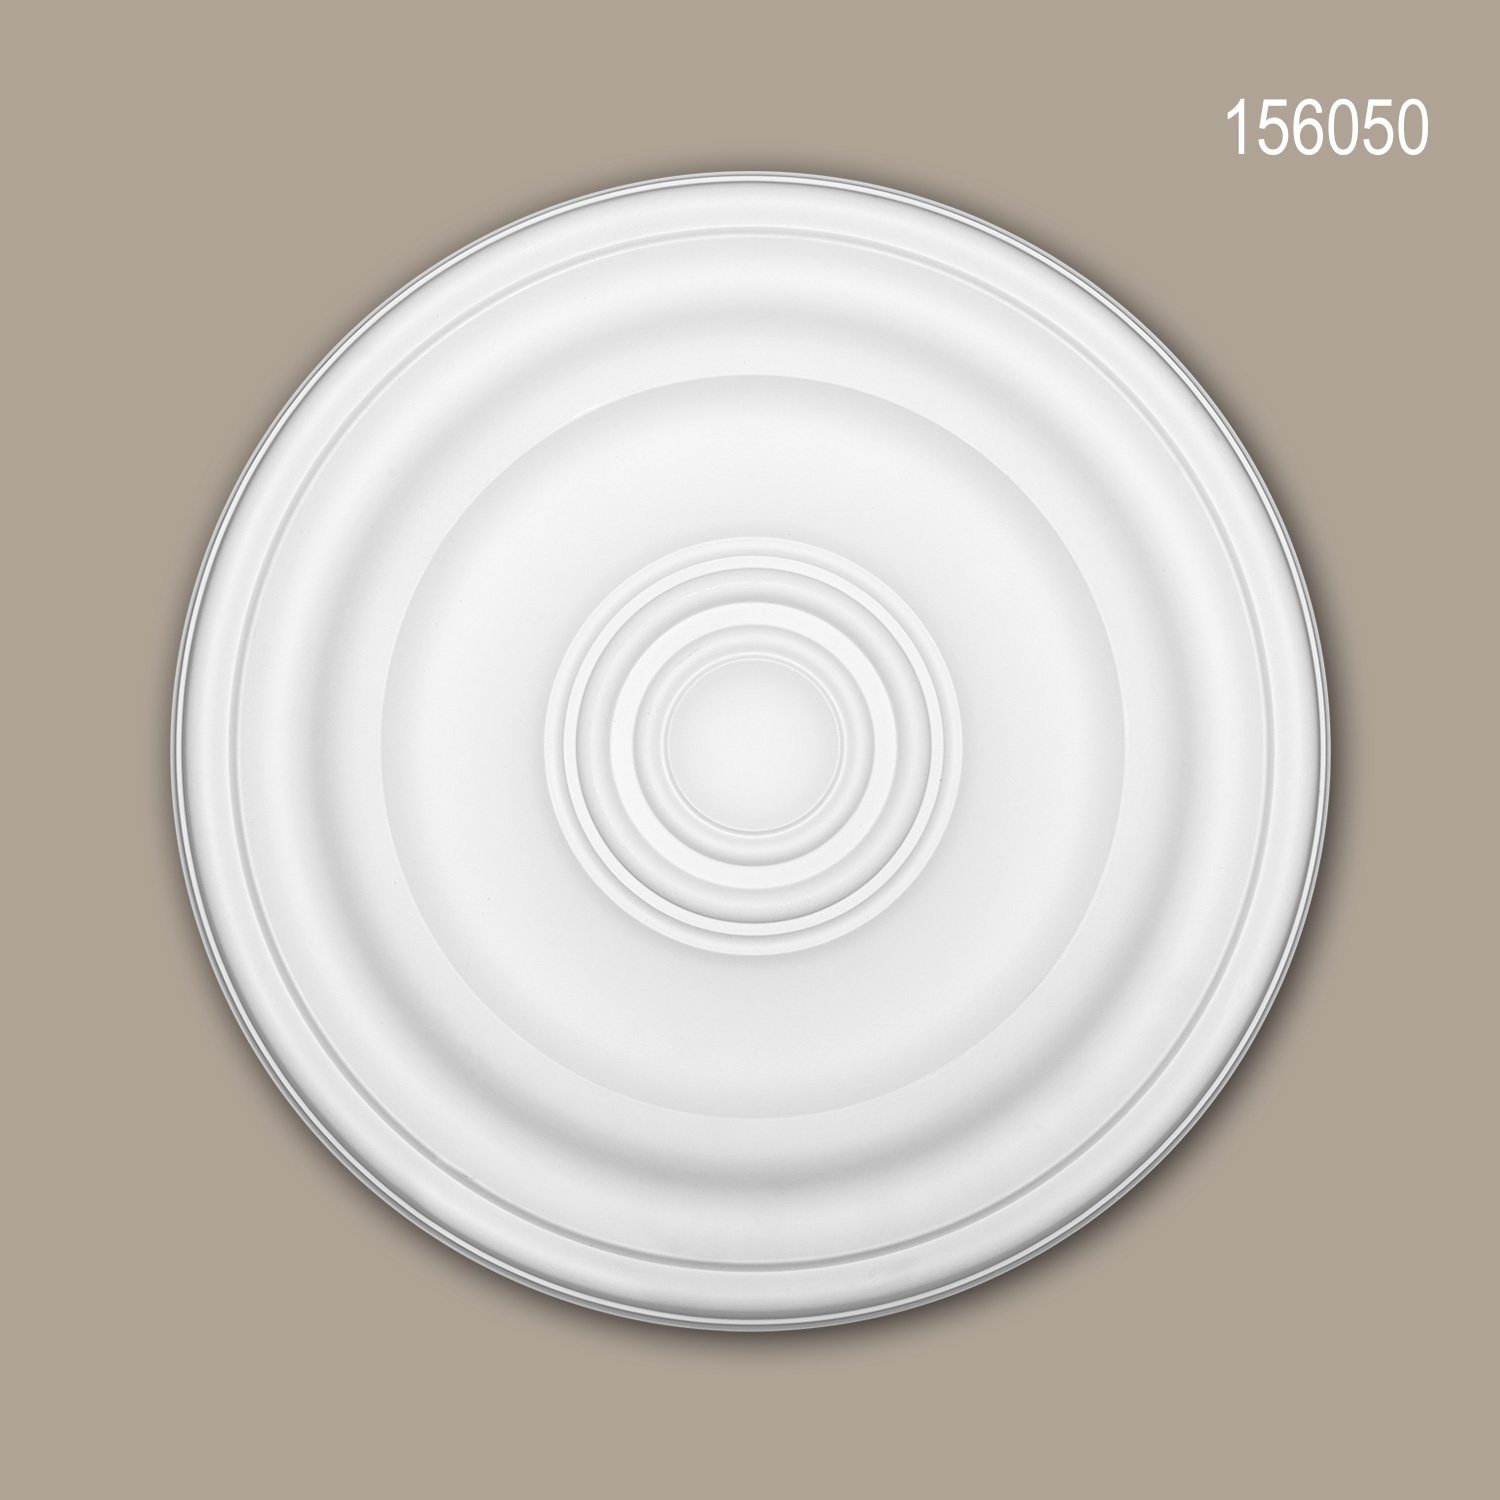 Profhome Decken-Rosette 156050 (Rosette, 1 St., Deckenrosette, Medallion, Stuckrosette, Deckenelement, Zierelement, Durchmesser 40,4 cm), weiß, vorgrundiert, Stil: Zeitlos / Klassisch